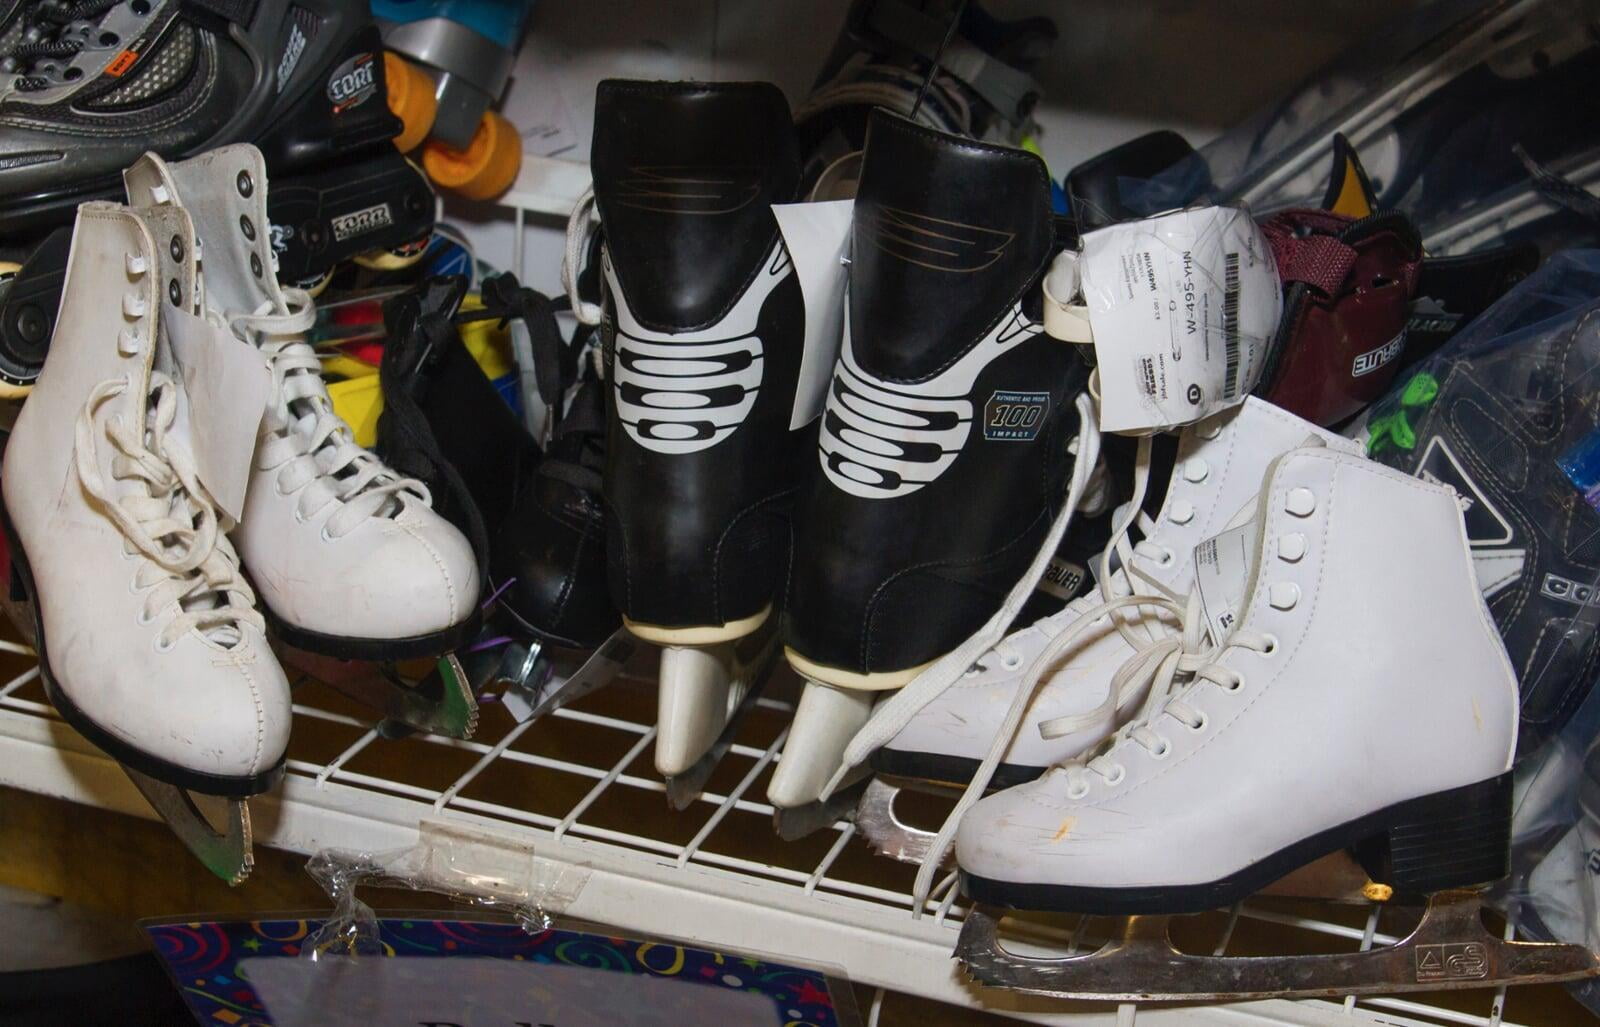 One pair of black ice skates and two pair of white ice skates on white metal shelf.